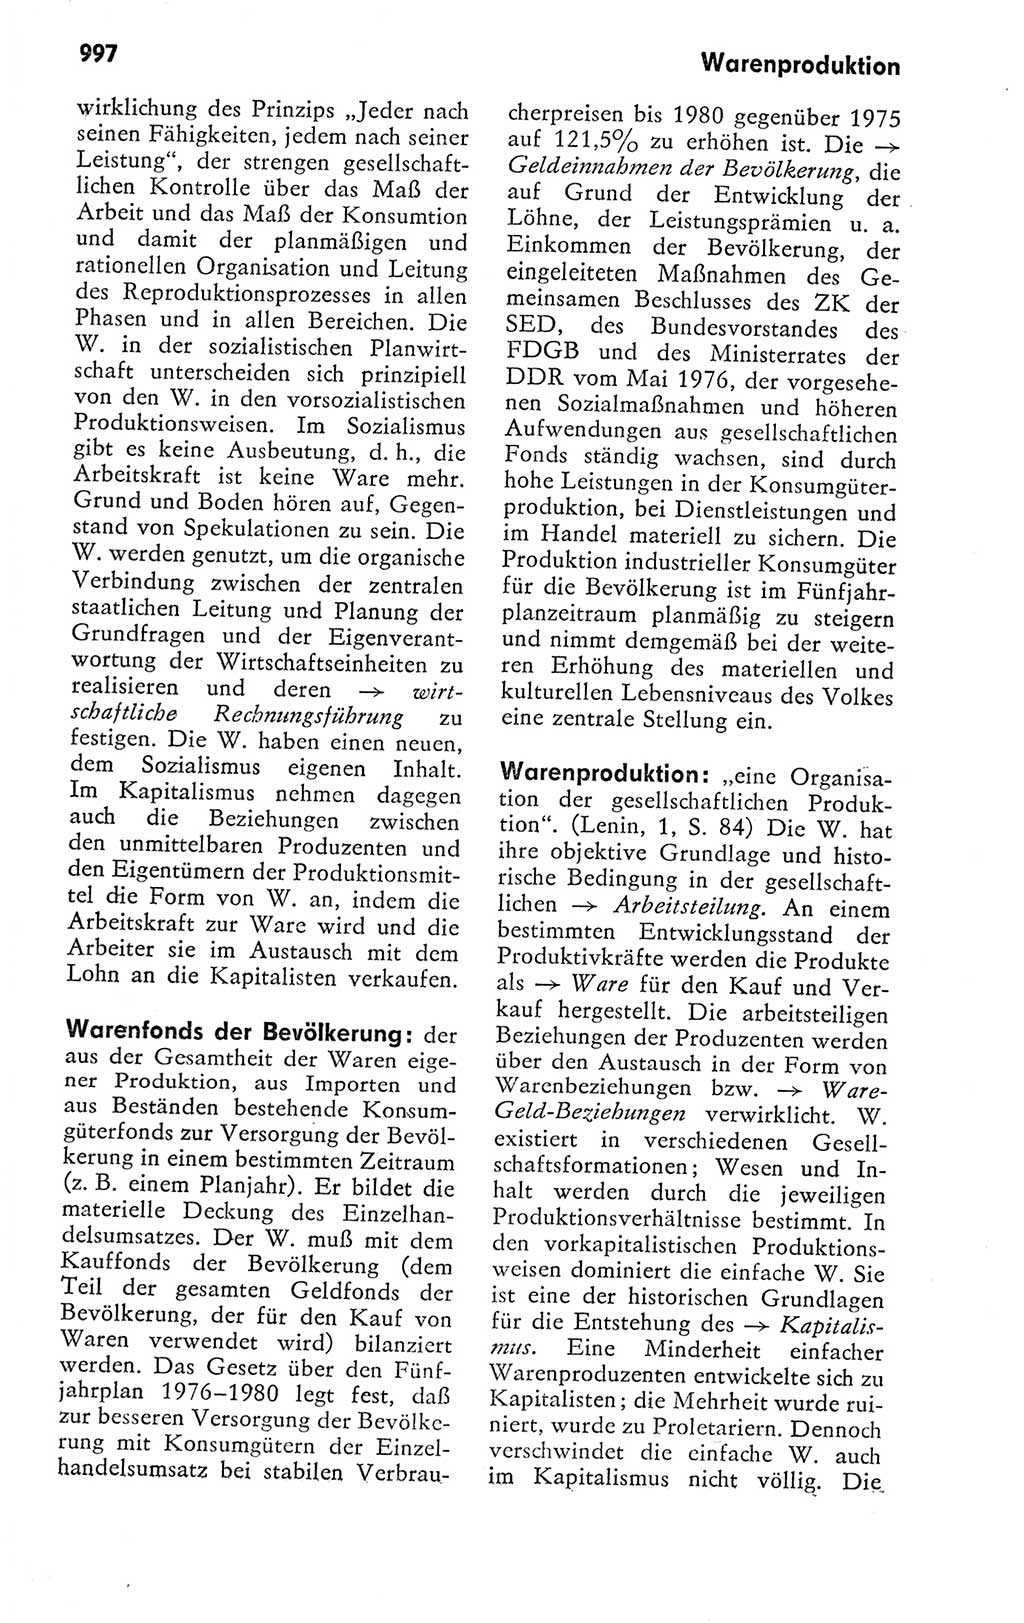 Kleines politisches Wörterbuch [Deutsche Demokratische Republik (DDR)] 1978, Seite 997 (Kl. pol. Wb. DDR 1978, S. 997)